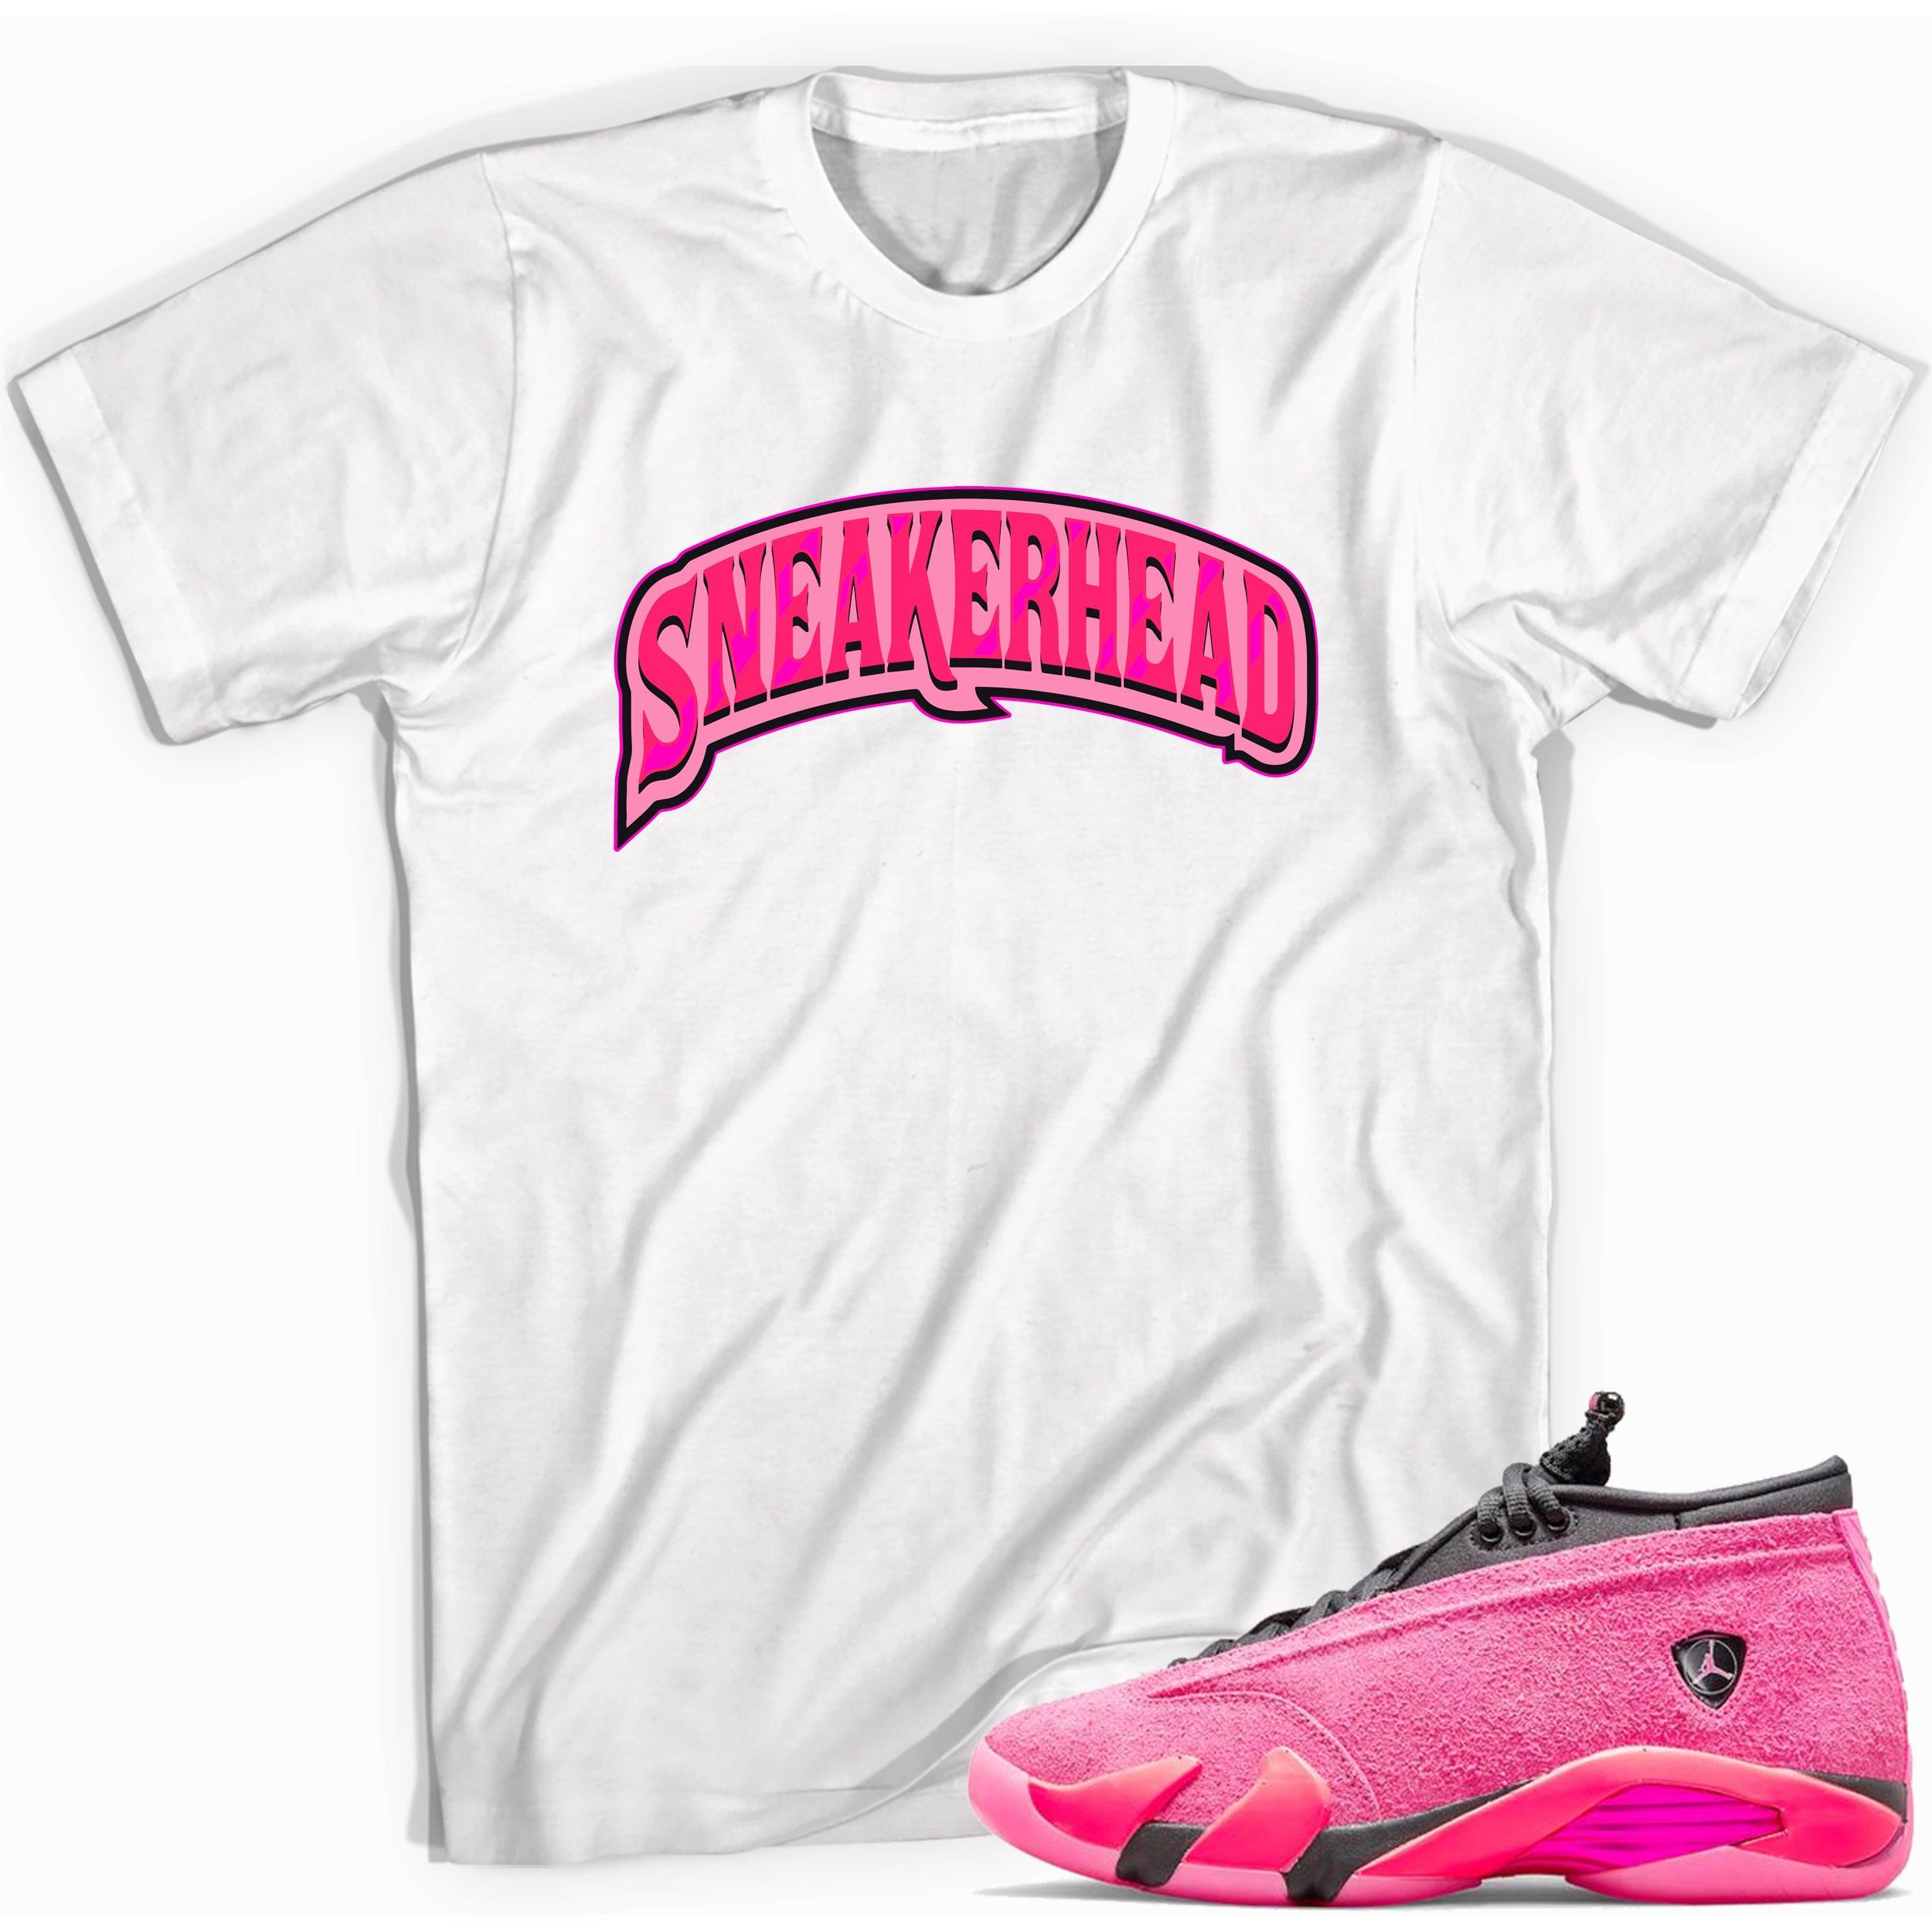 Sneakerhead Shirt Jordan 14 Shocking Pink photo